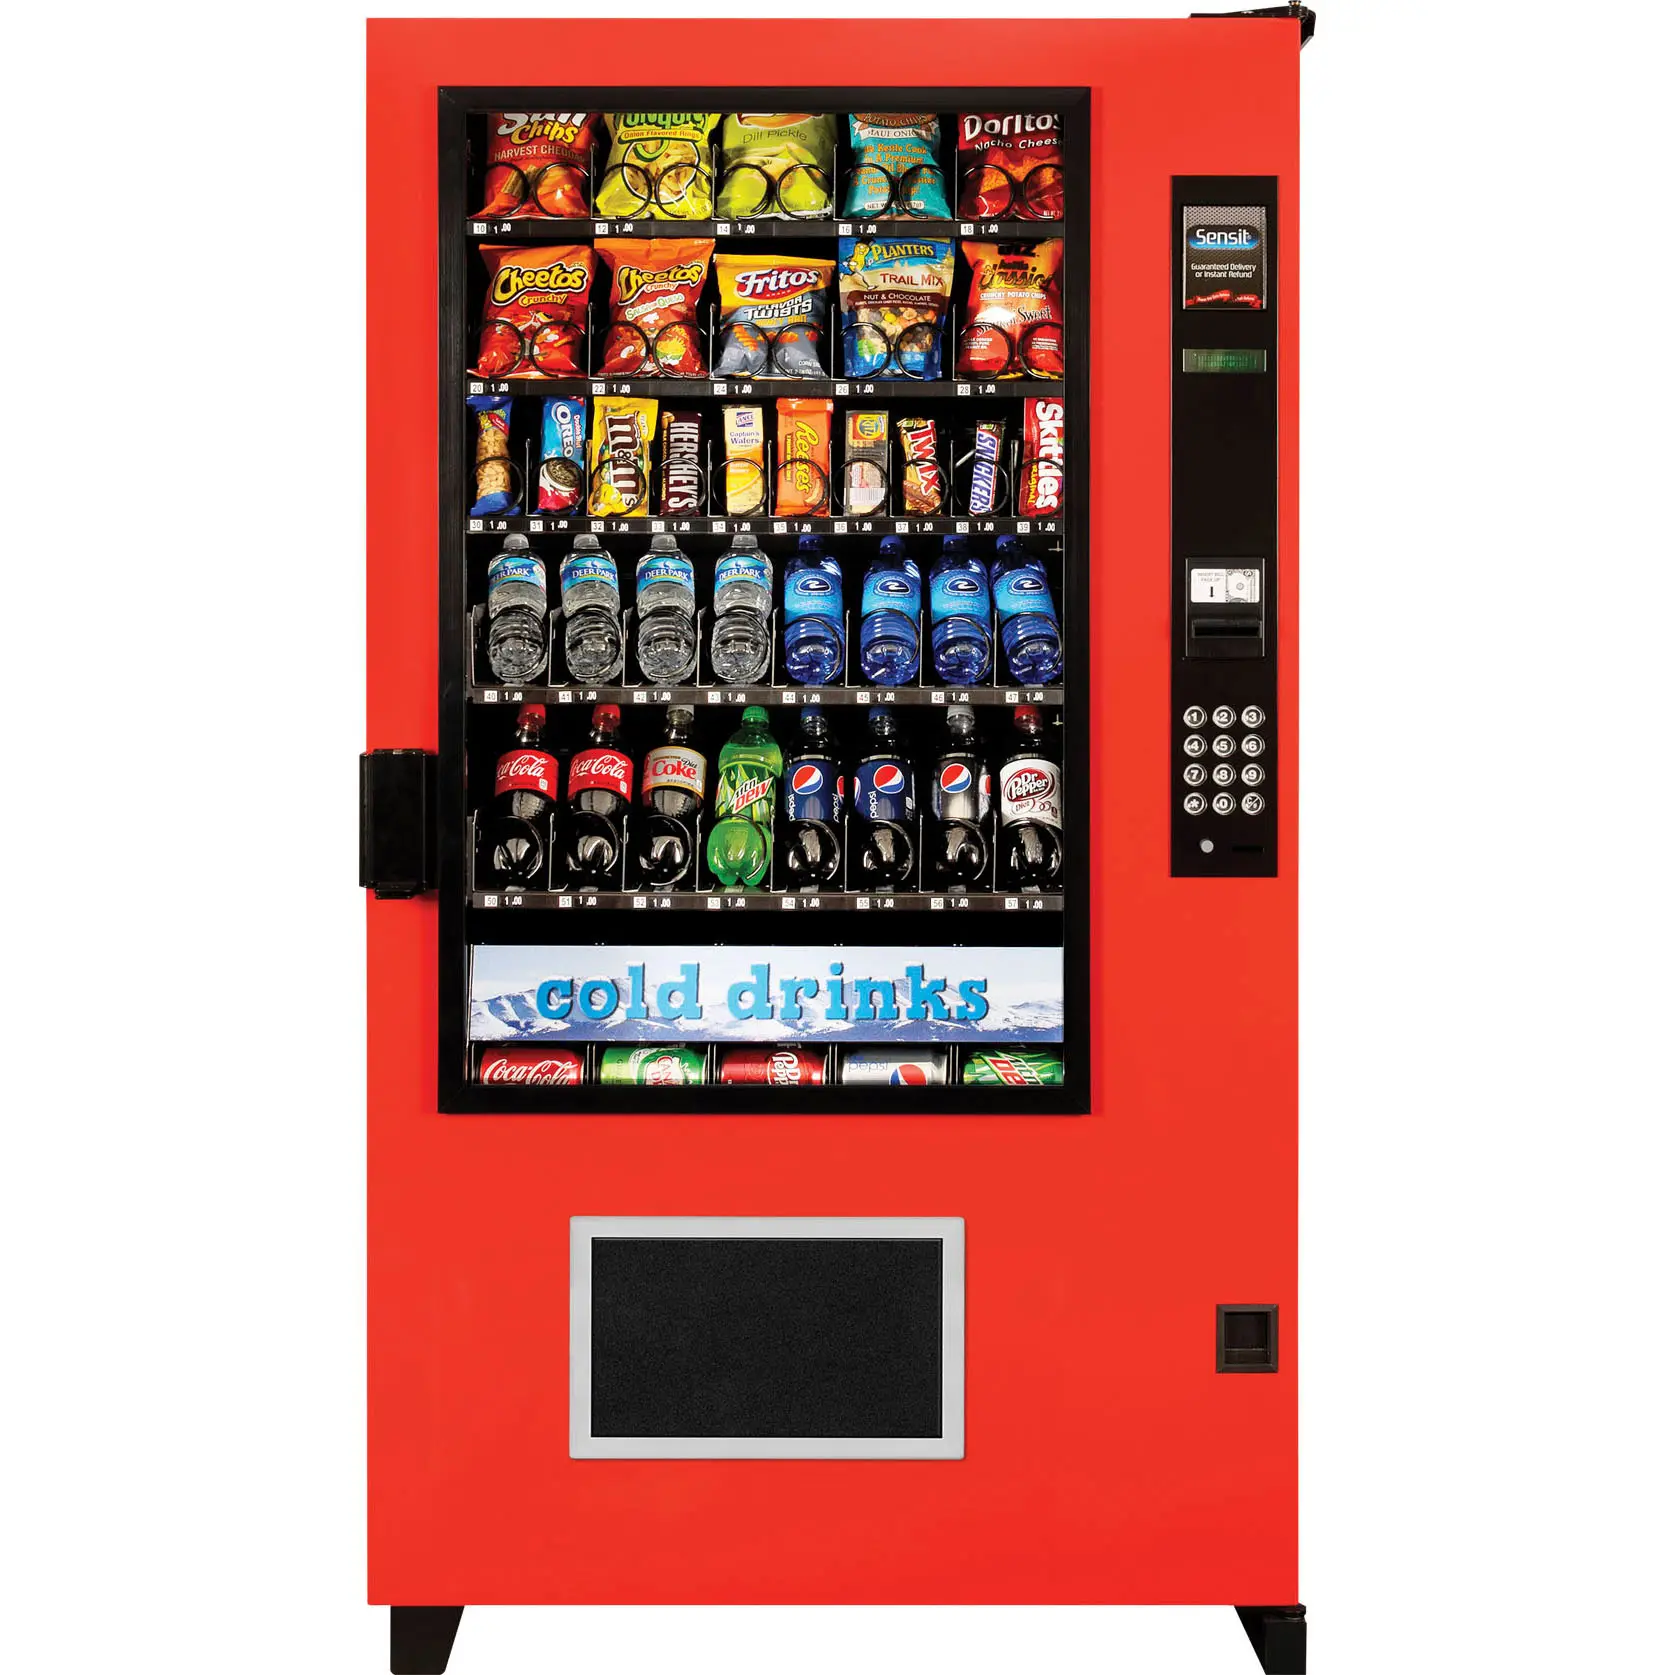 Distributeur automatique de boissons froides avec contrôle de température à double zone disponible et prêt pour l'expédition